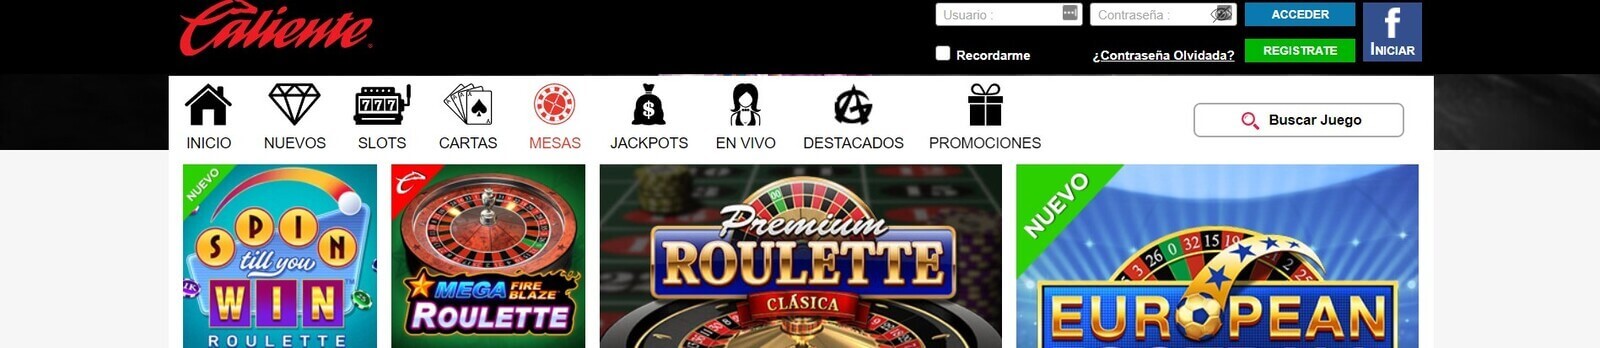 200+ Juegos de casino Caliente online en México